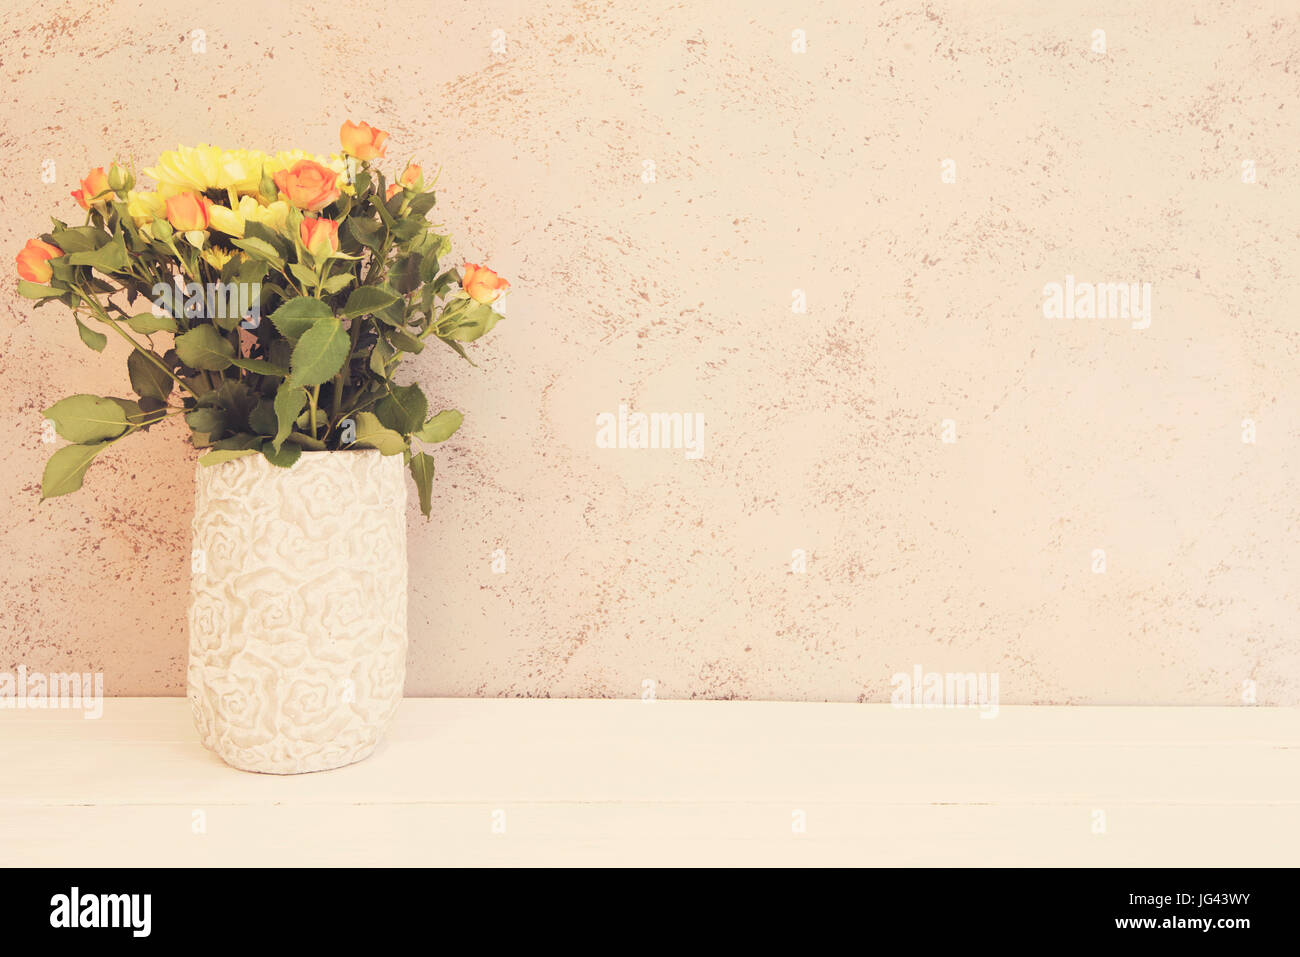 Vase de fleurs. Vase rustique avec des roses oranges et jaunes chrysanthèmes. Fond blanc, lieu vide, l'espace de copie. Teinté Vintage Banque D'Images